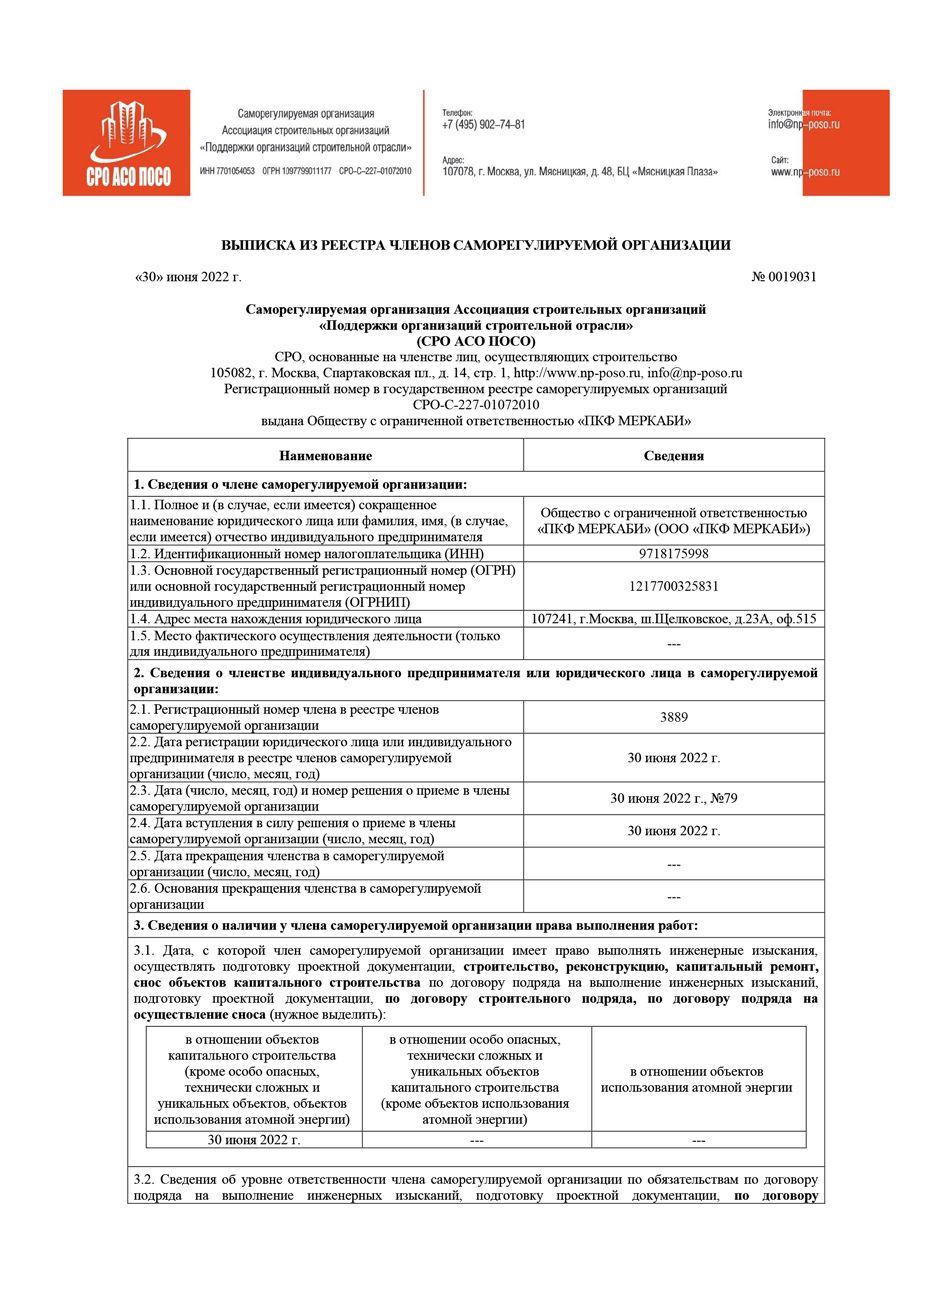 Выписка из реестра о членстве в СРО-С-227-01072010